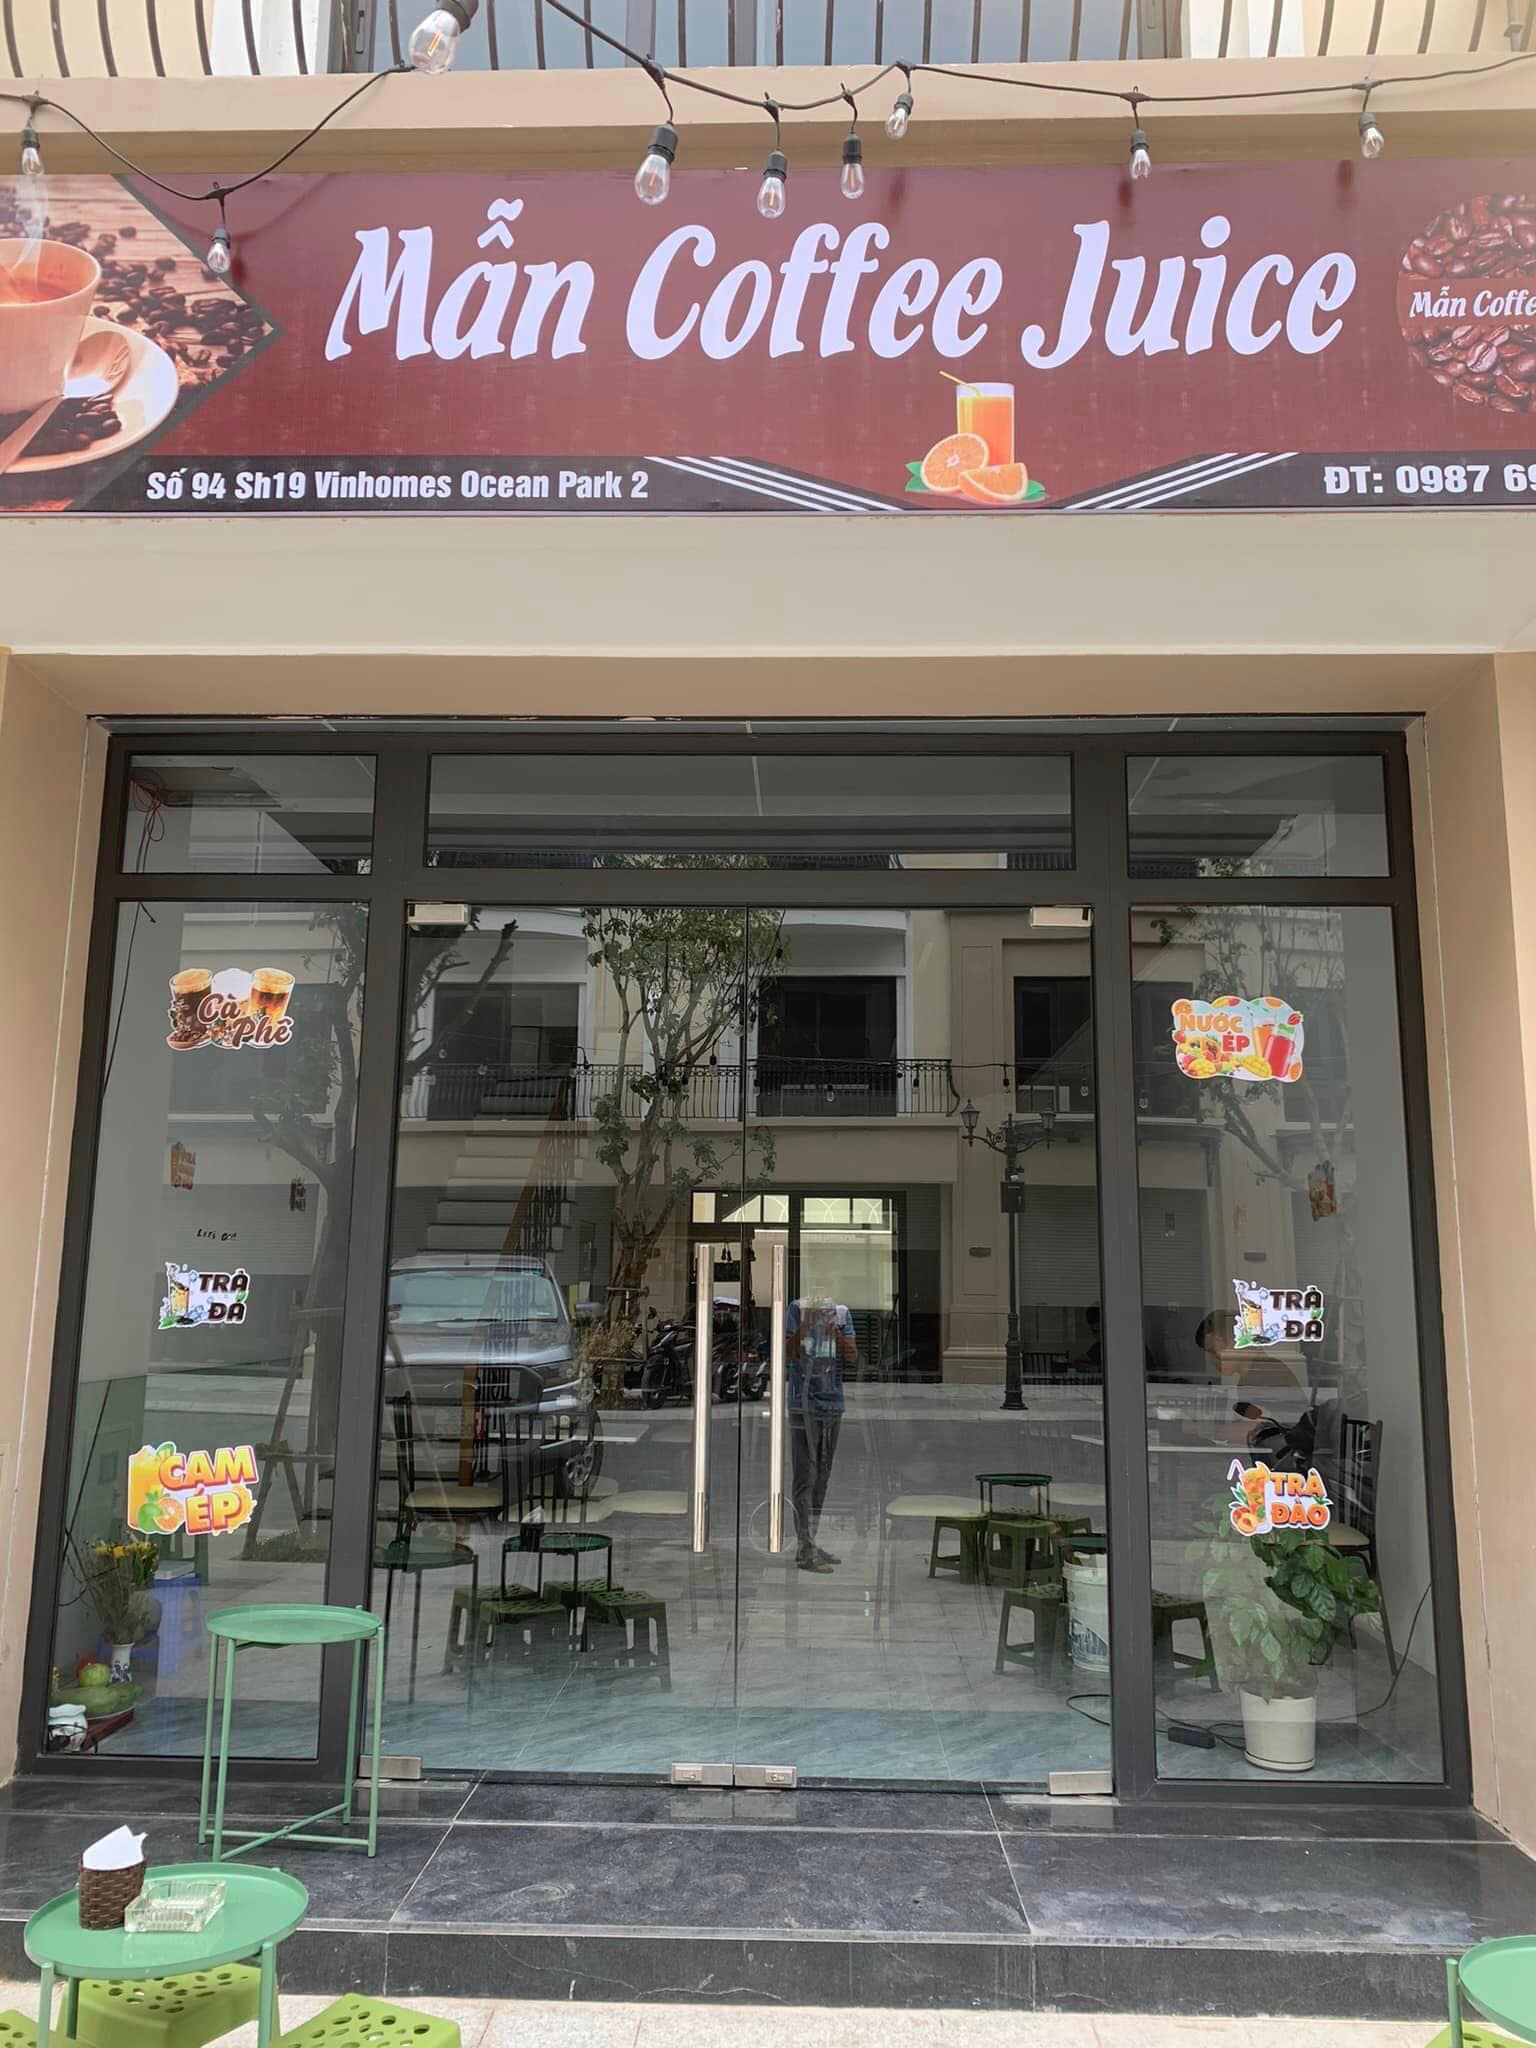 Man Coffee